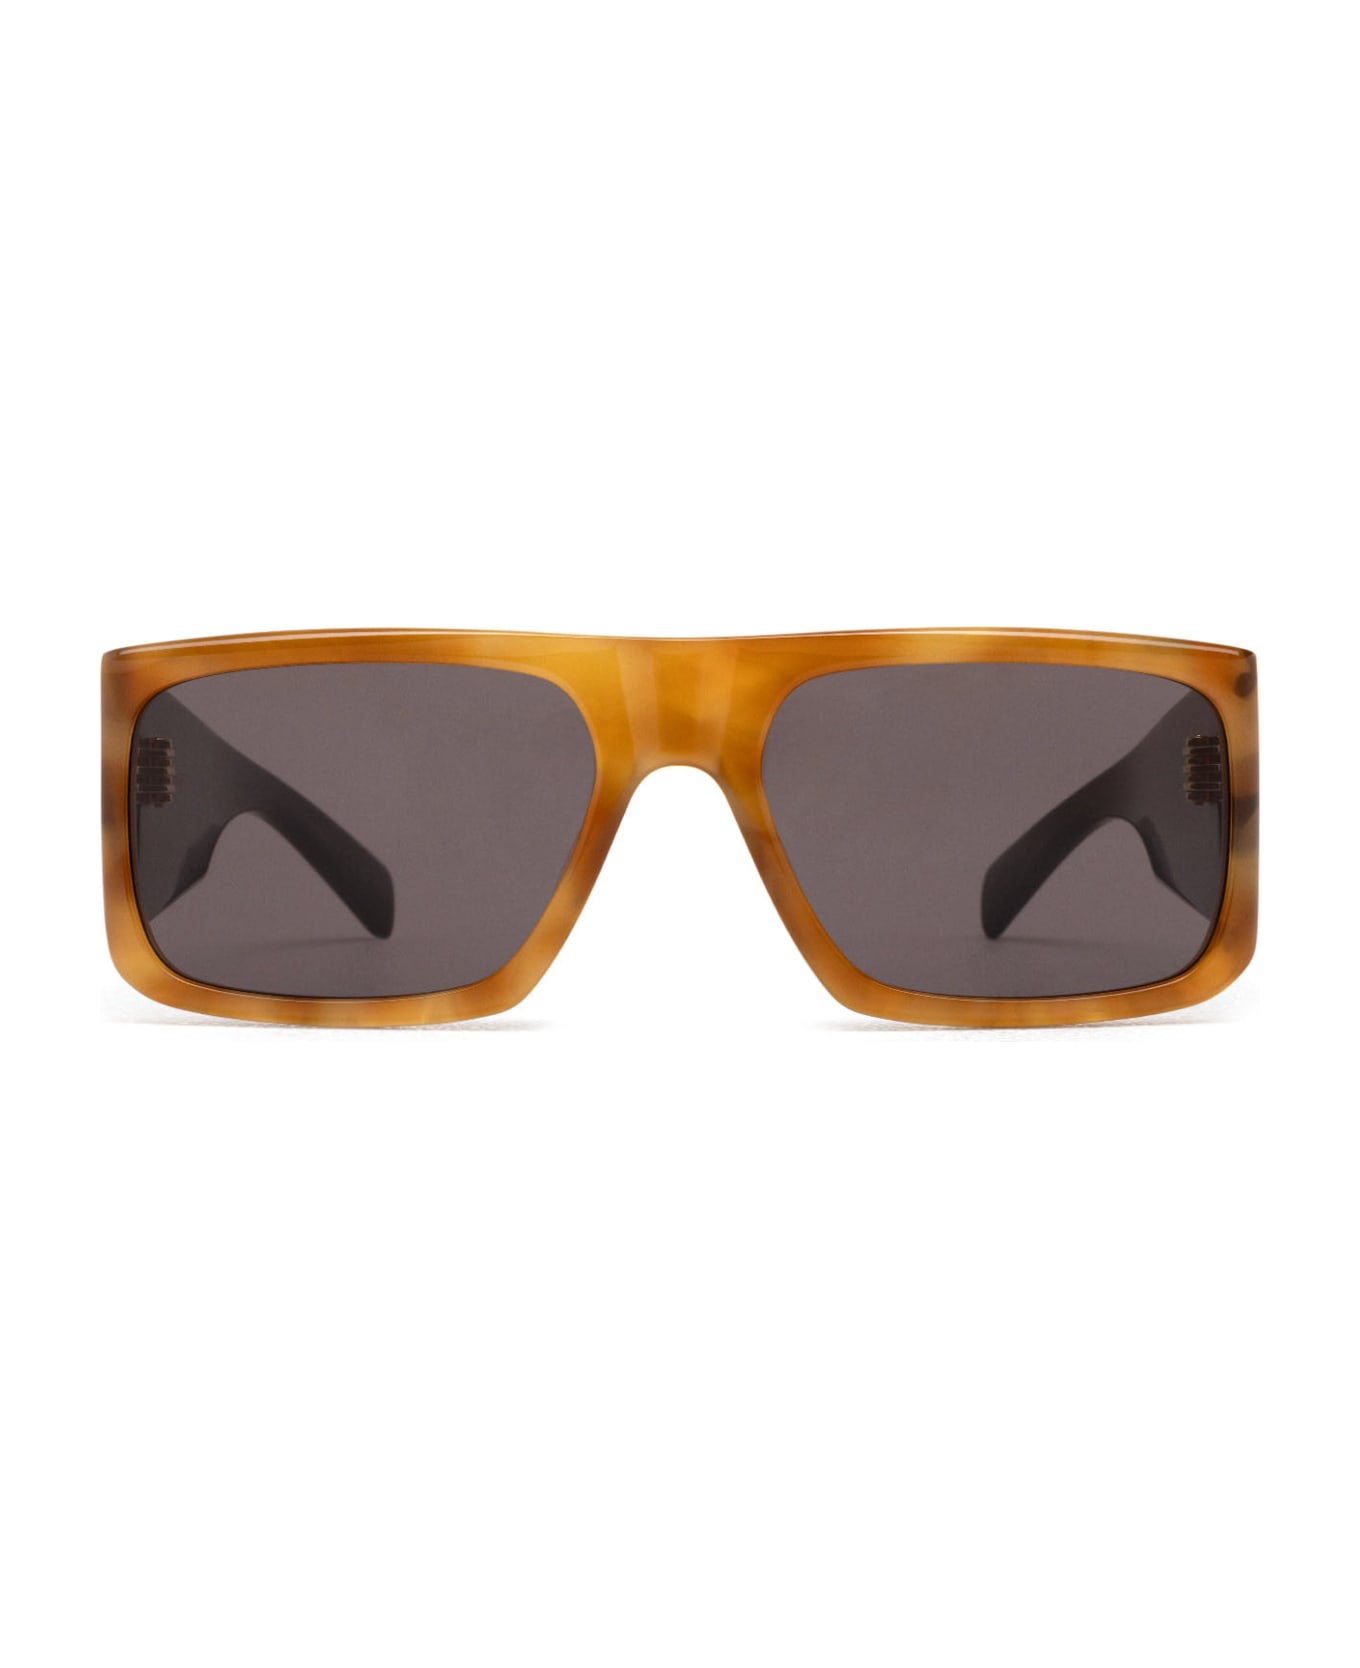 Saint Laurent Eyewear Sl 635 Acetate Havana Sunglasses - Havana